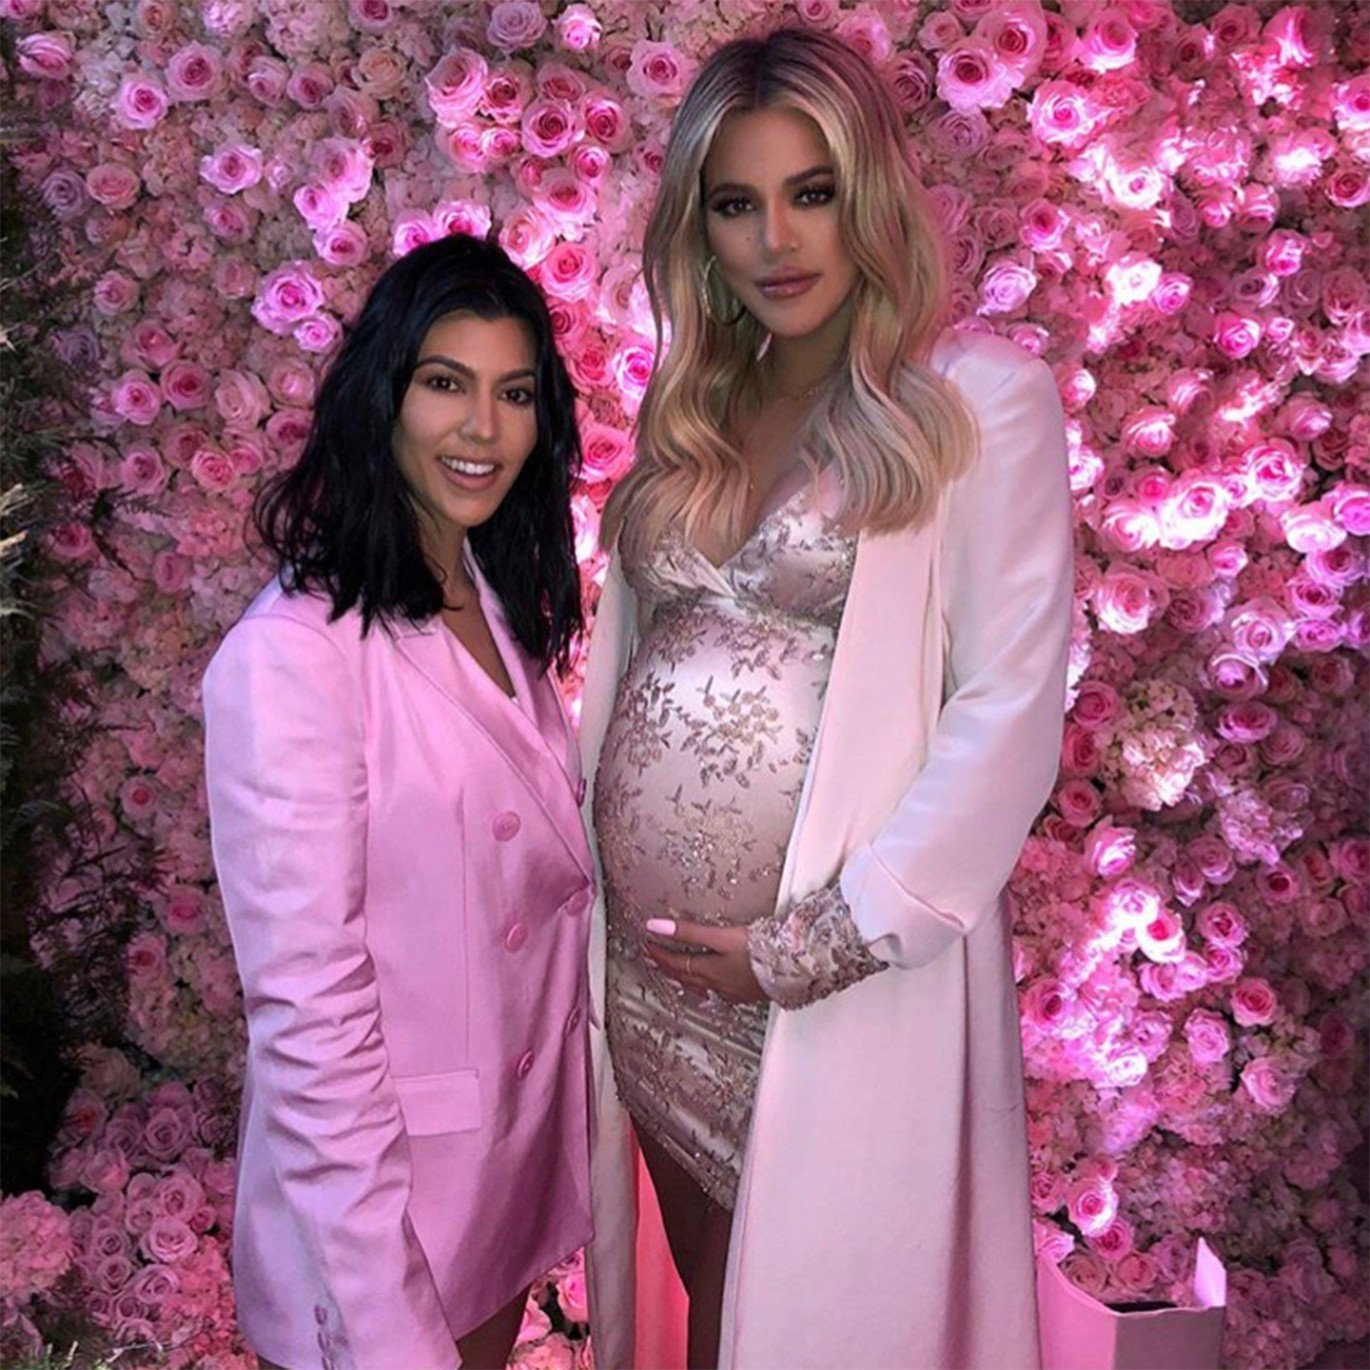 Khloe Kardashian Baby Shower Pictures 2018 v2